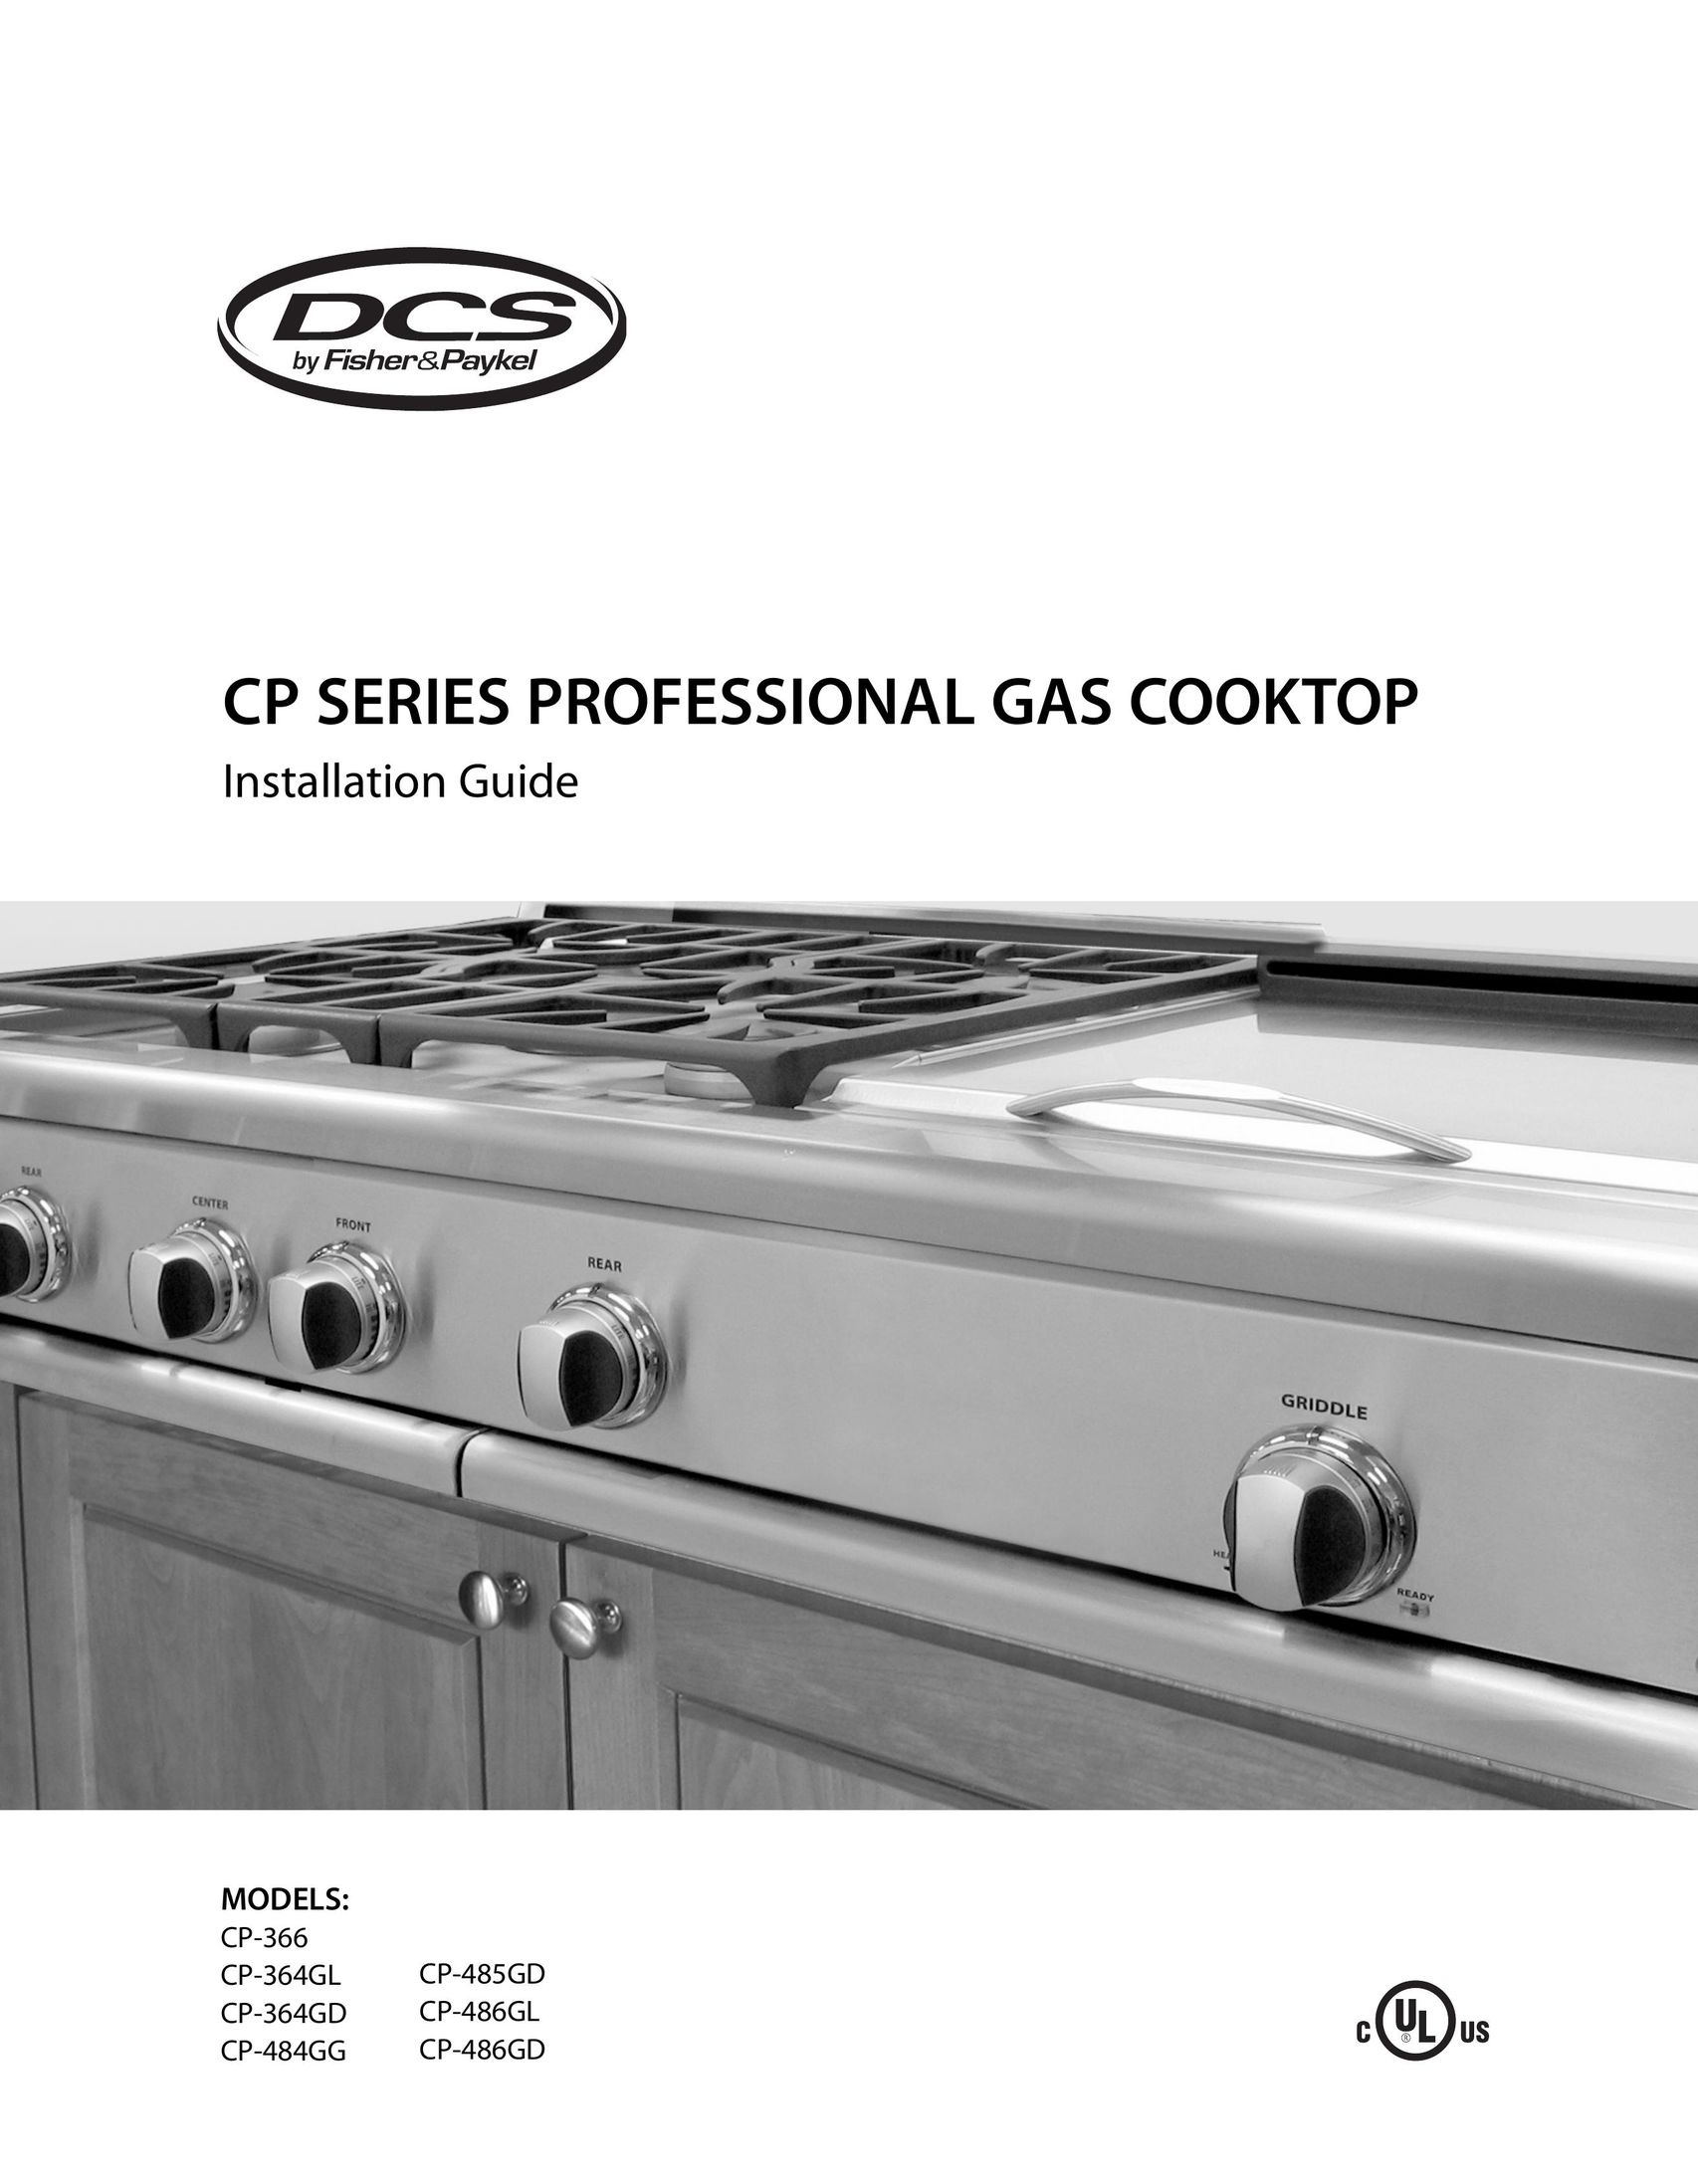 DCS CP-484GG Cooktop User Manual